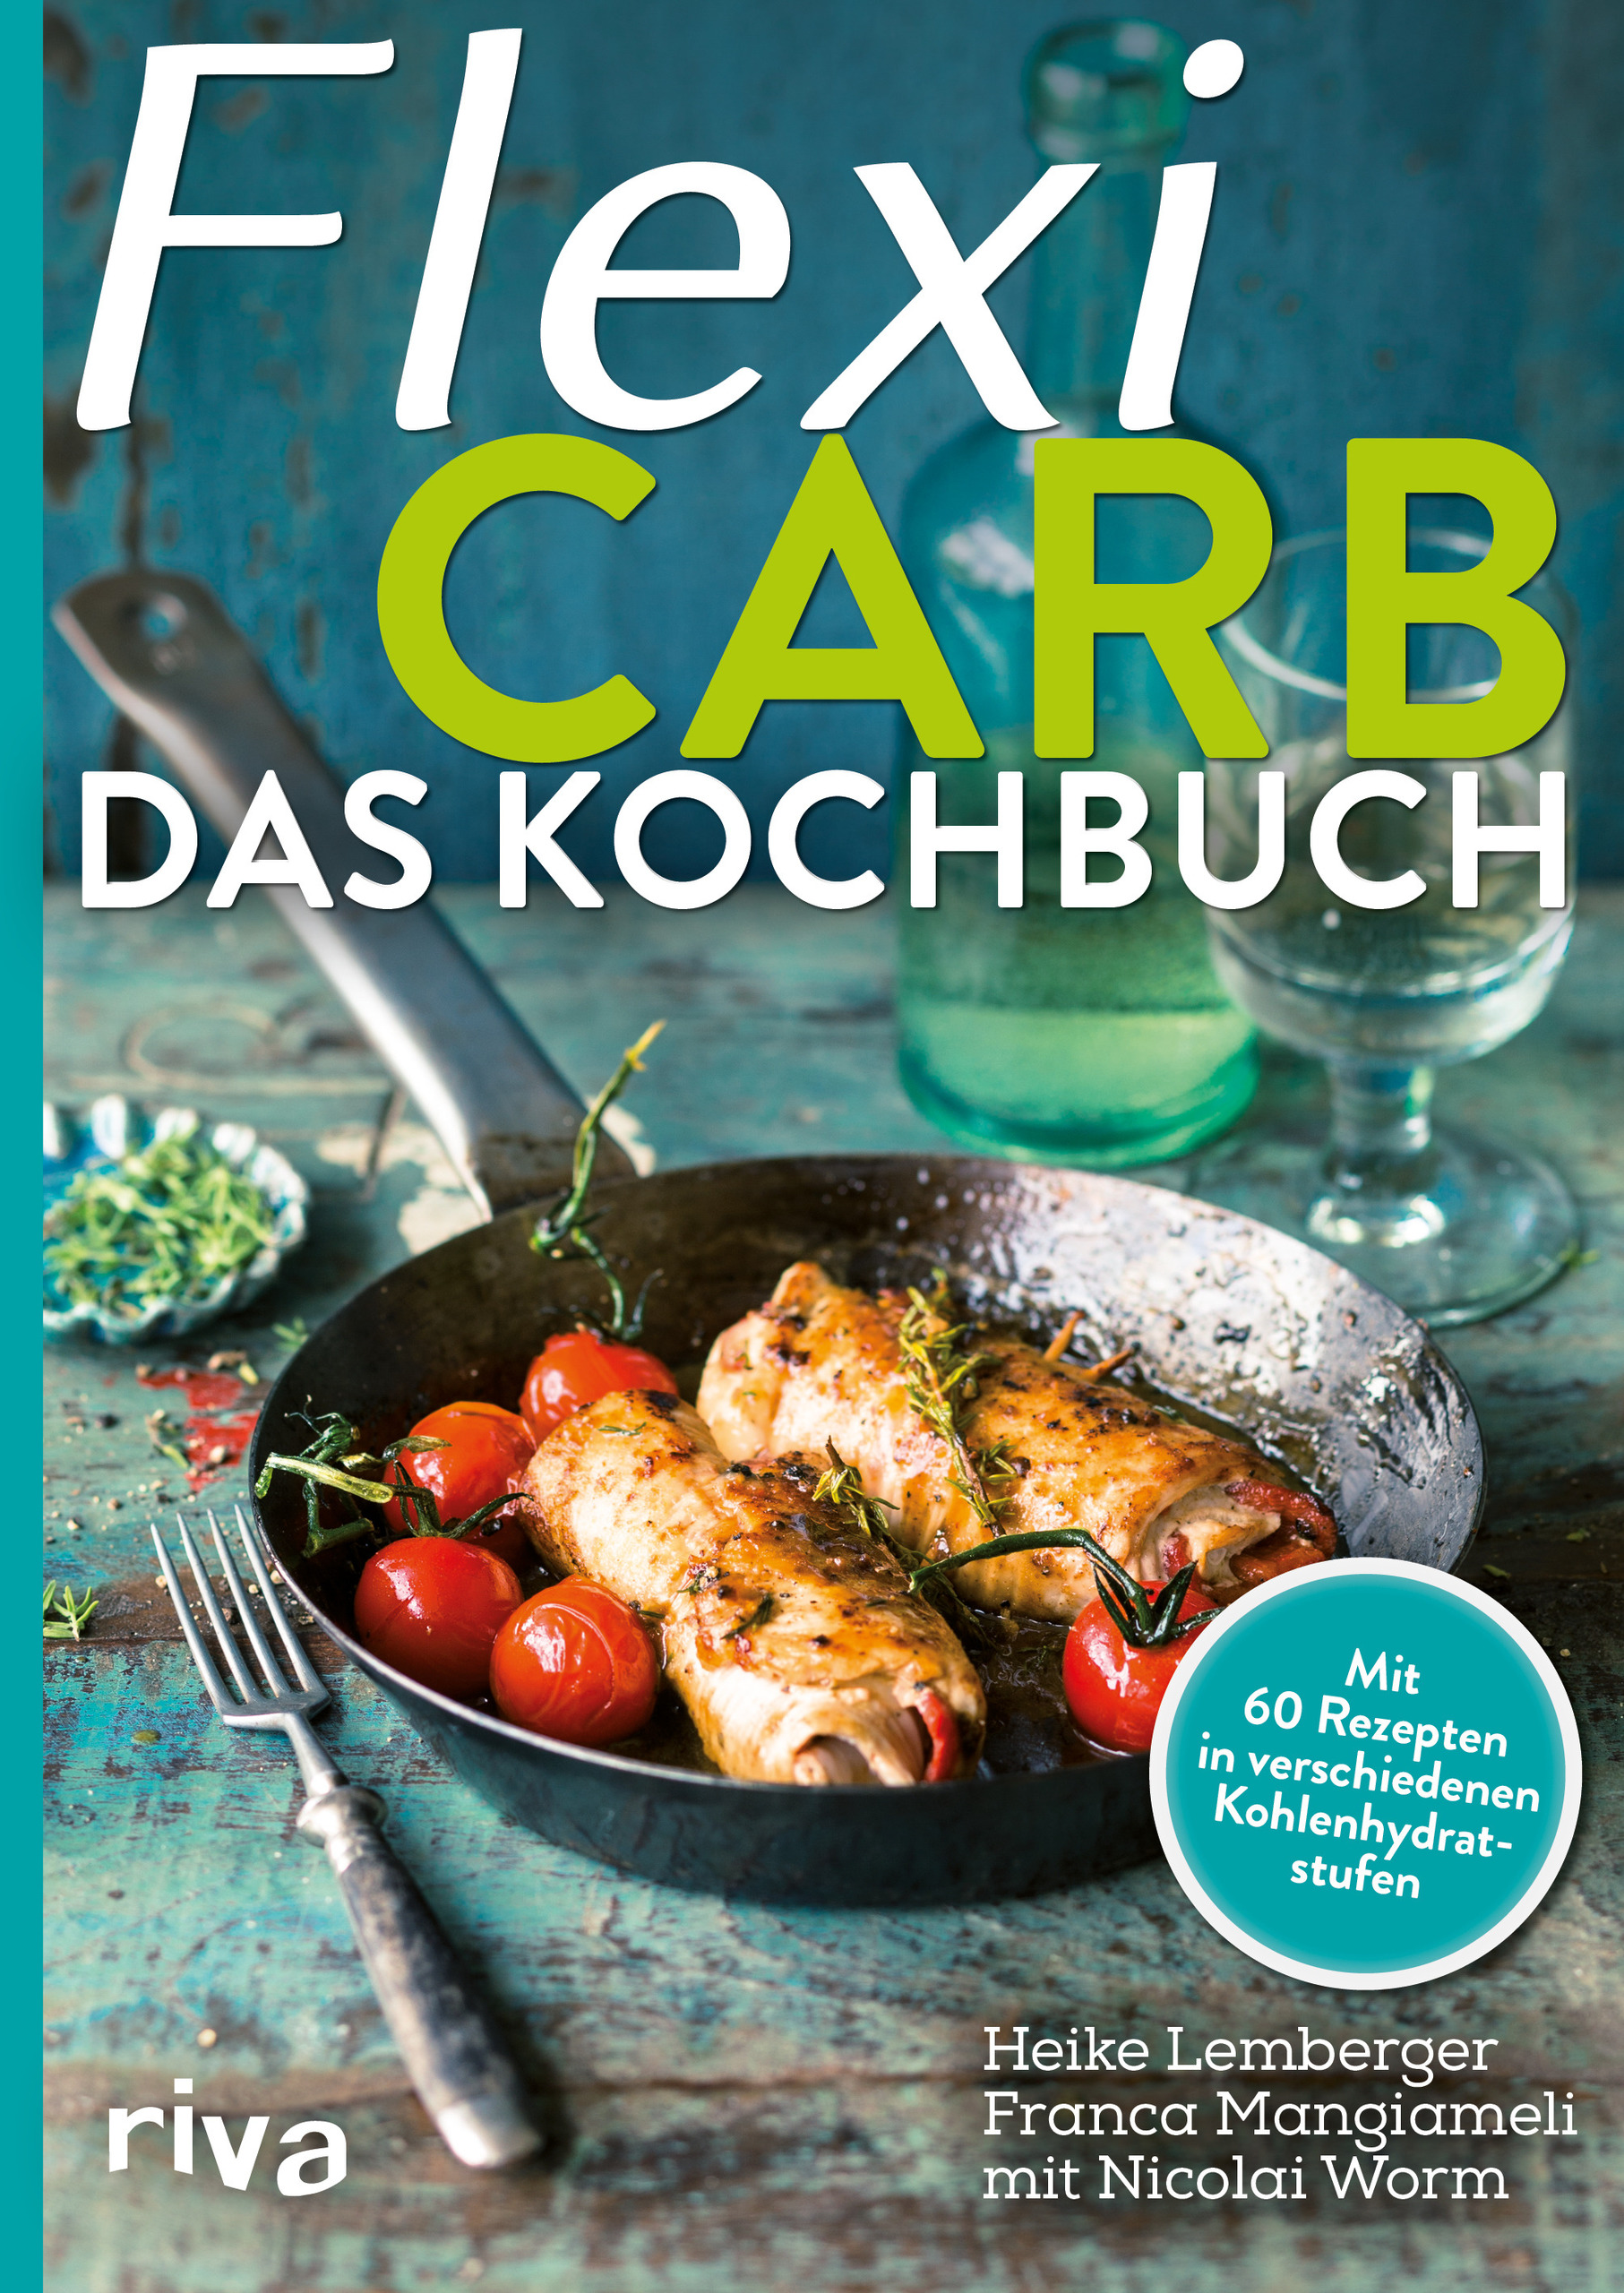 FlexiCarb Das Kochbuch it 60 Rezepten in verschiedenen Kohlenhydratstufen PDF